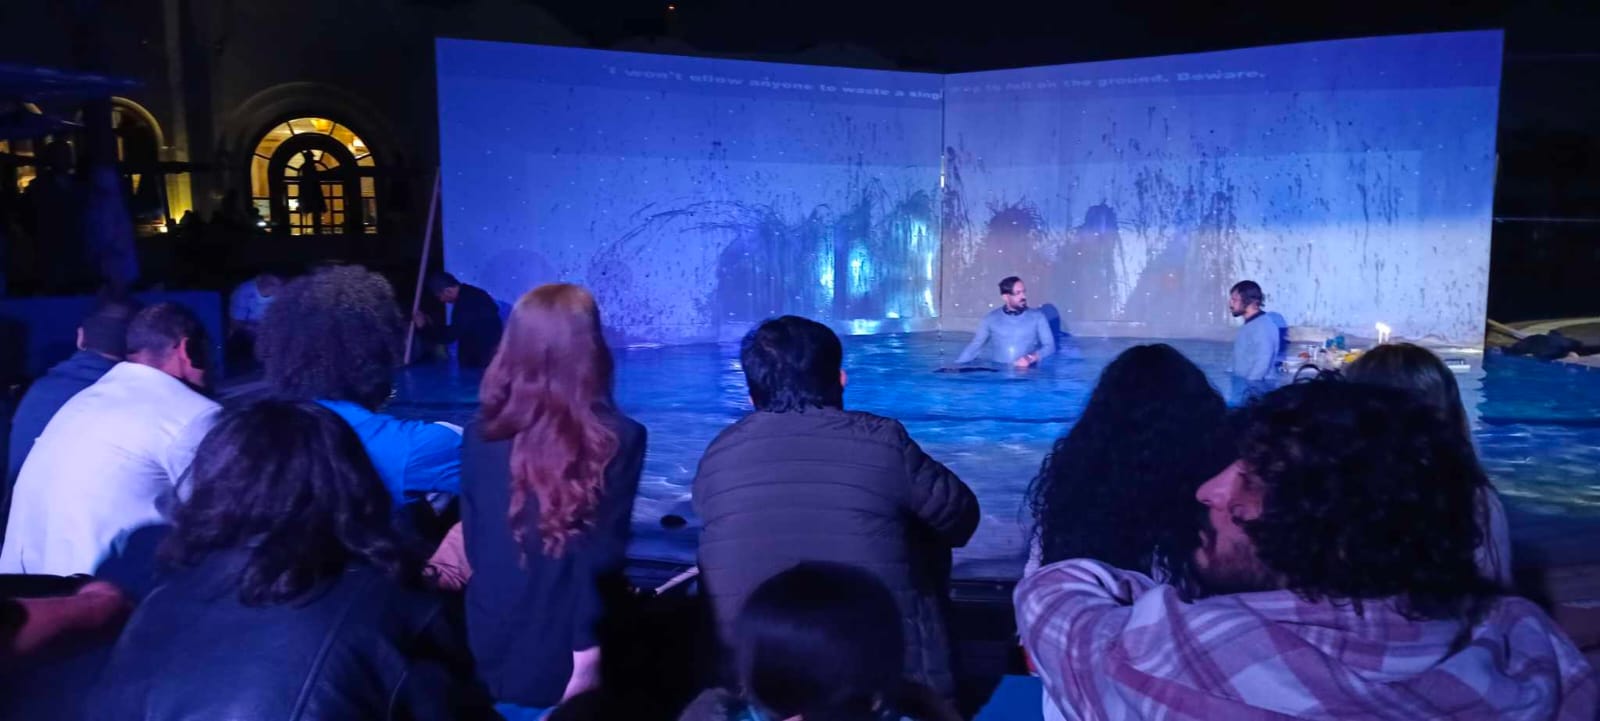 من داخل حمام السباحة العرض العراقي ليلة ماطرة بمهرجان شرم الشيخ الدولي للمسرح الشبابي|صور